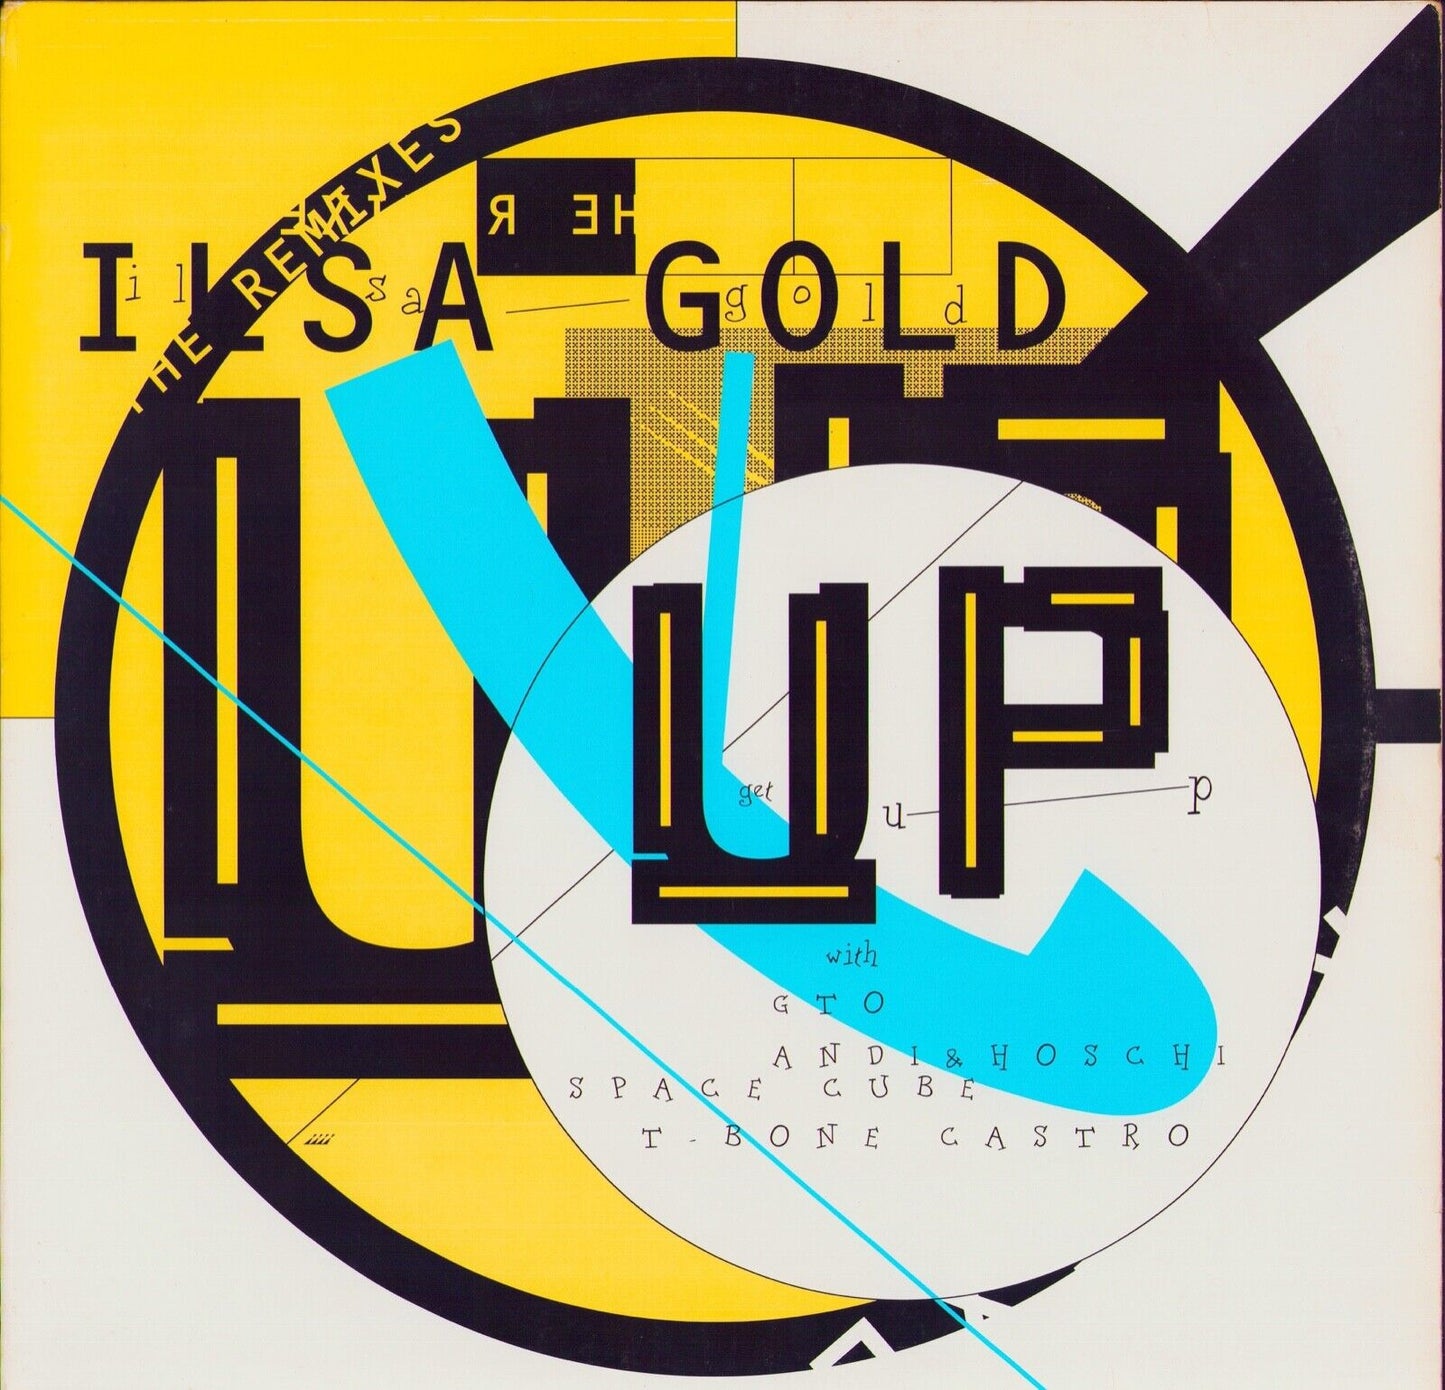 Ilsa Gold - Up Remixes Vinyl 12"